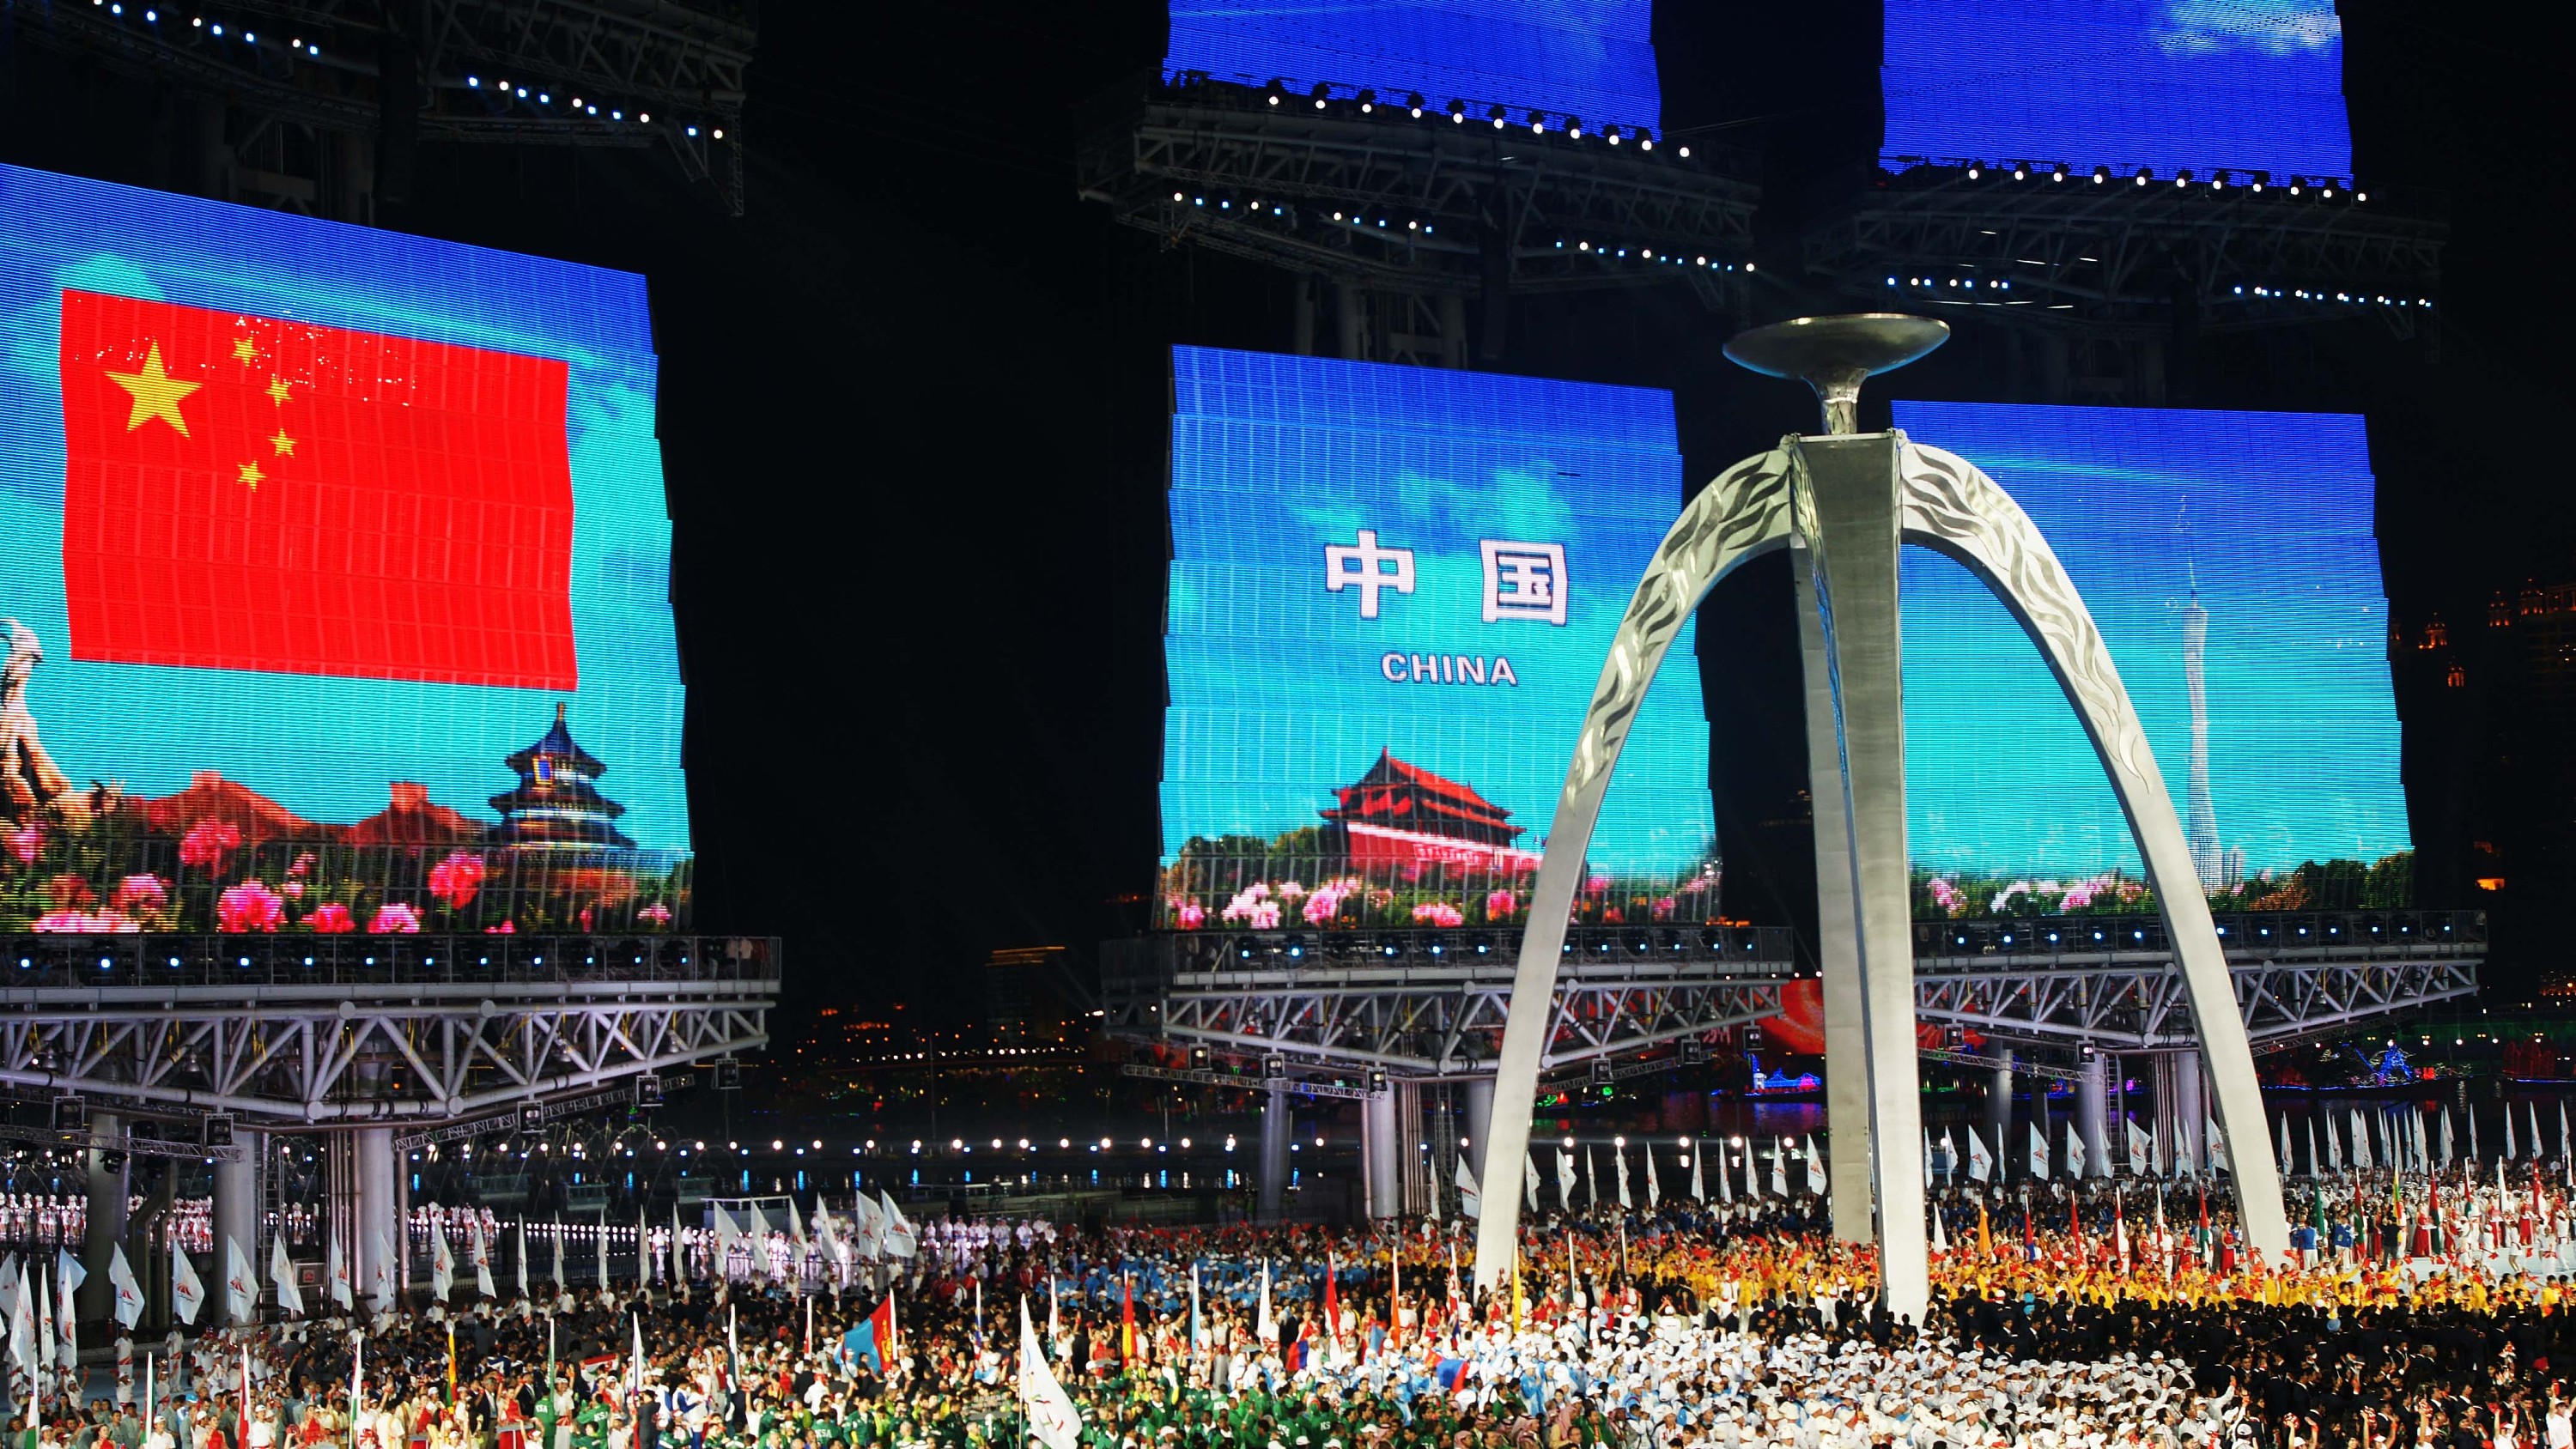 【官方转载】杭州亚运会宣传片 · 一-bilibili(B站)无水印视频解析——YIUIOS易柚斯